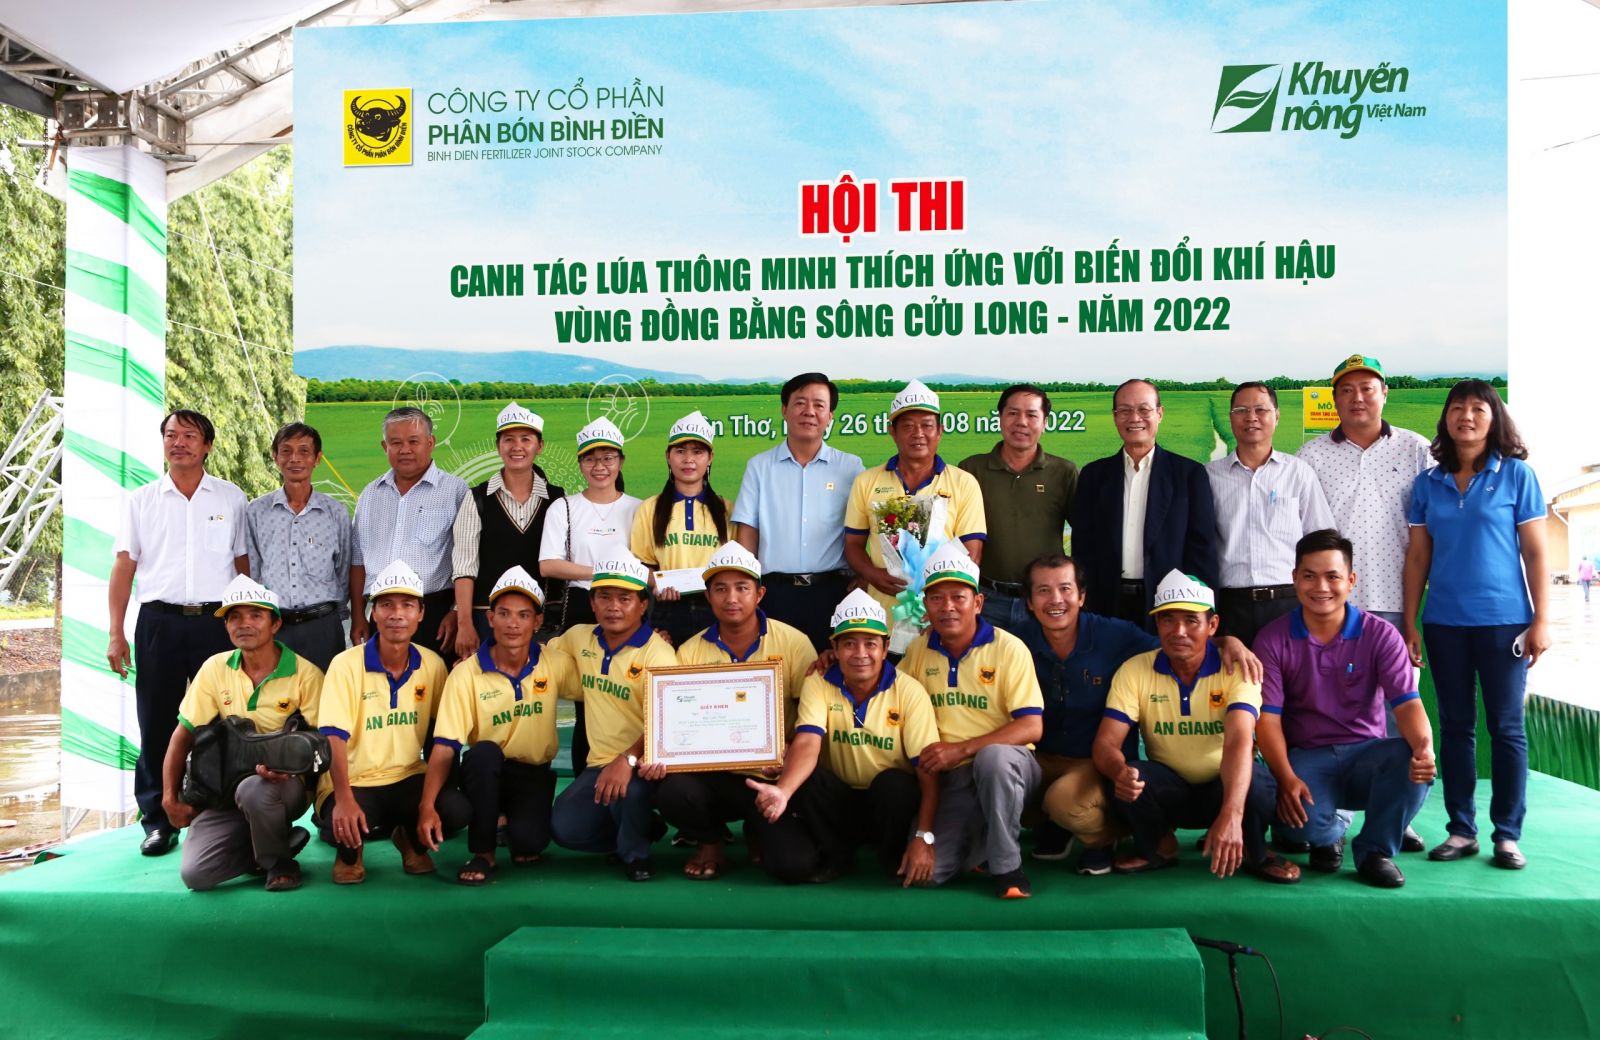 Bình Điền tổ chức thành công Hội thi Canh tác lúa thông minh thích ứng với biến đổi khí hậu 2022